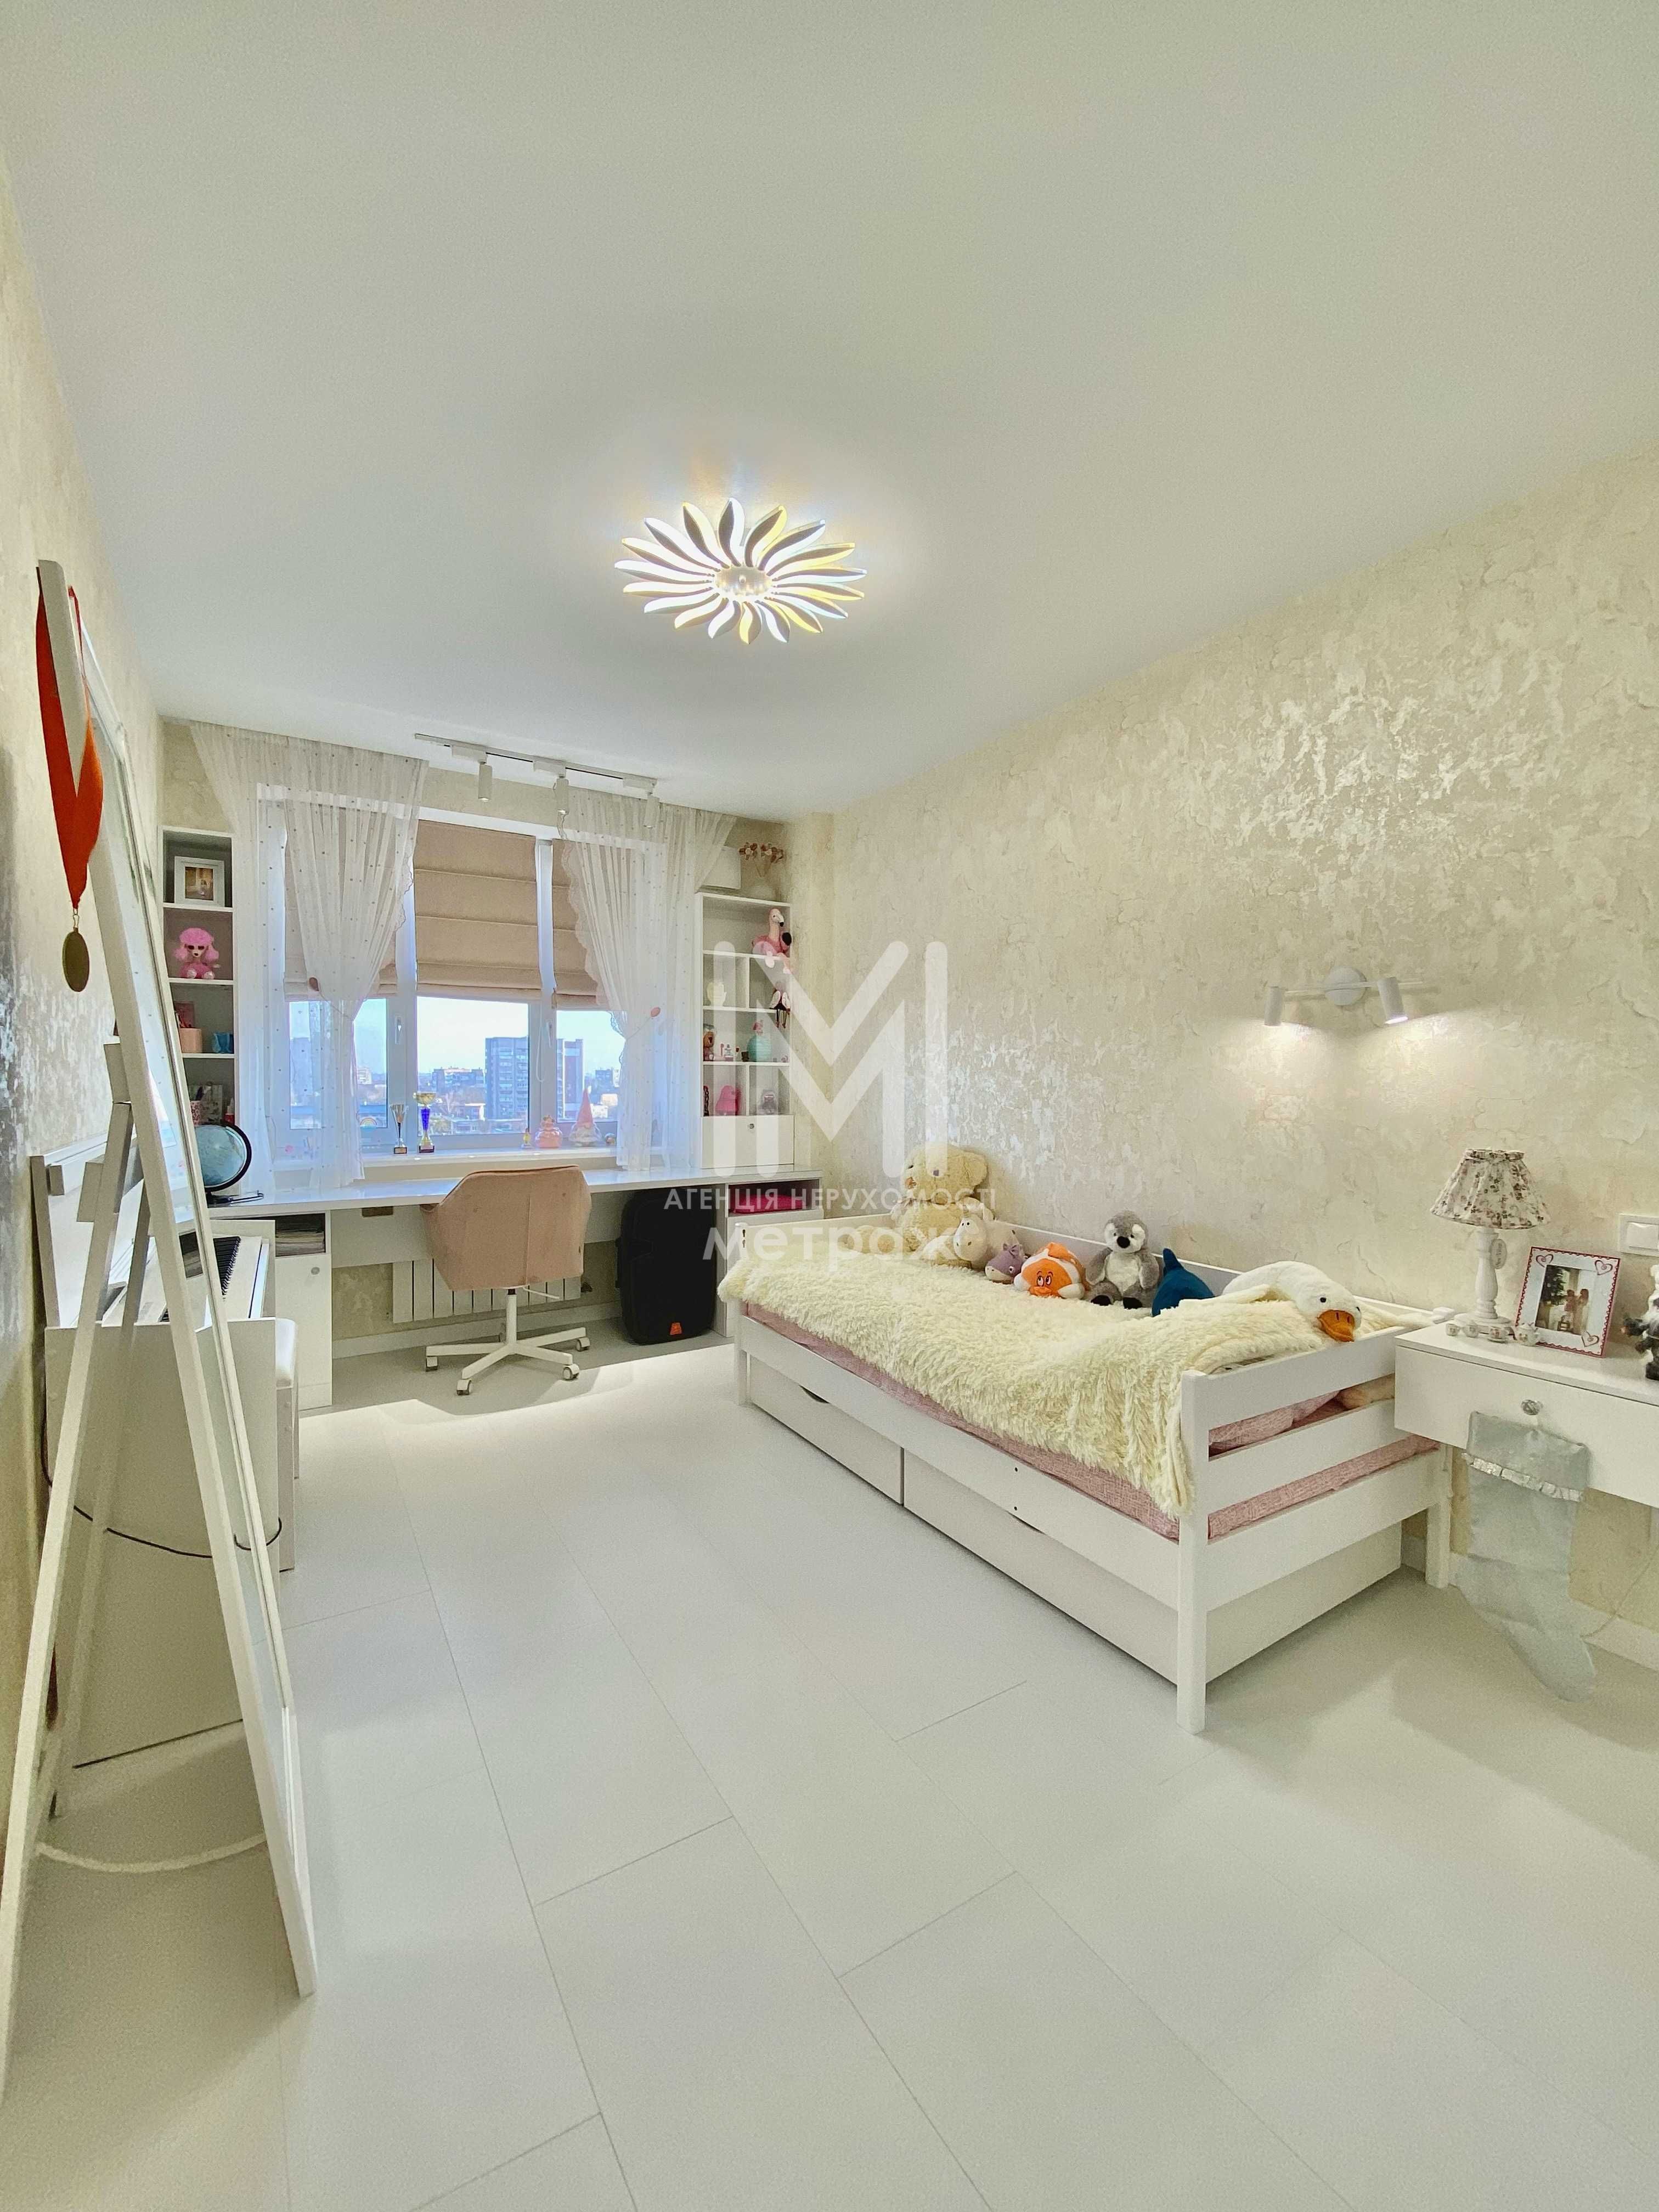 Продается уютная квартира площадью 65 м2 в живописном ЖК Садовый